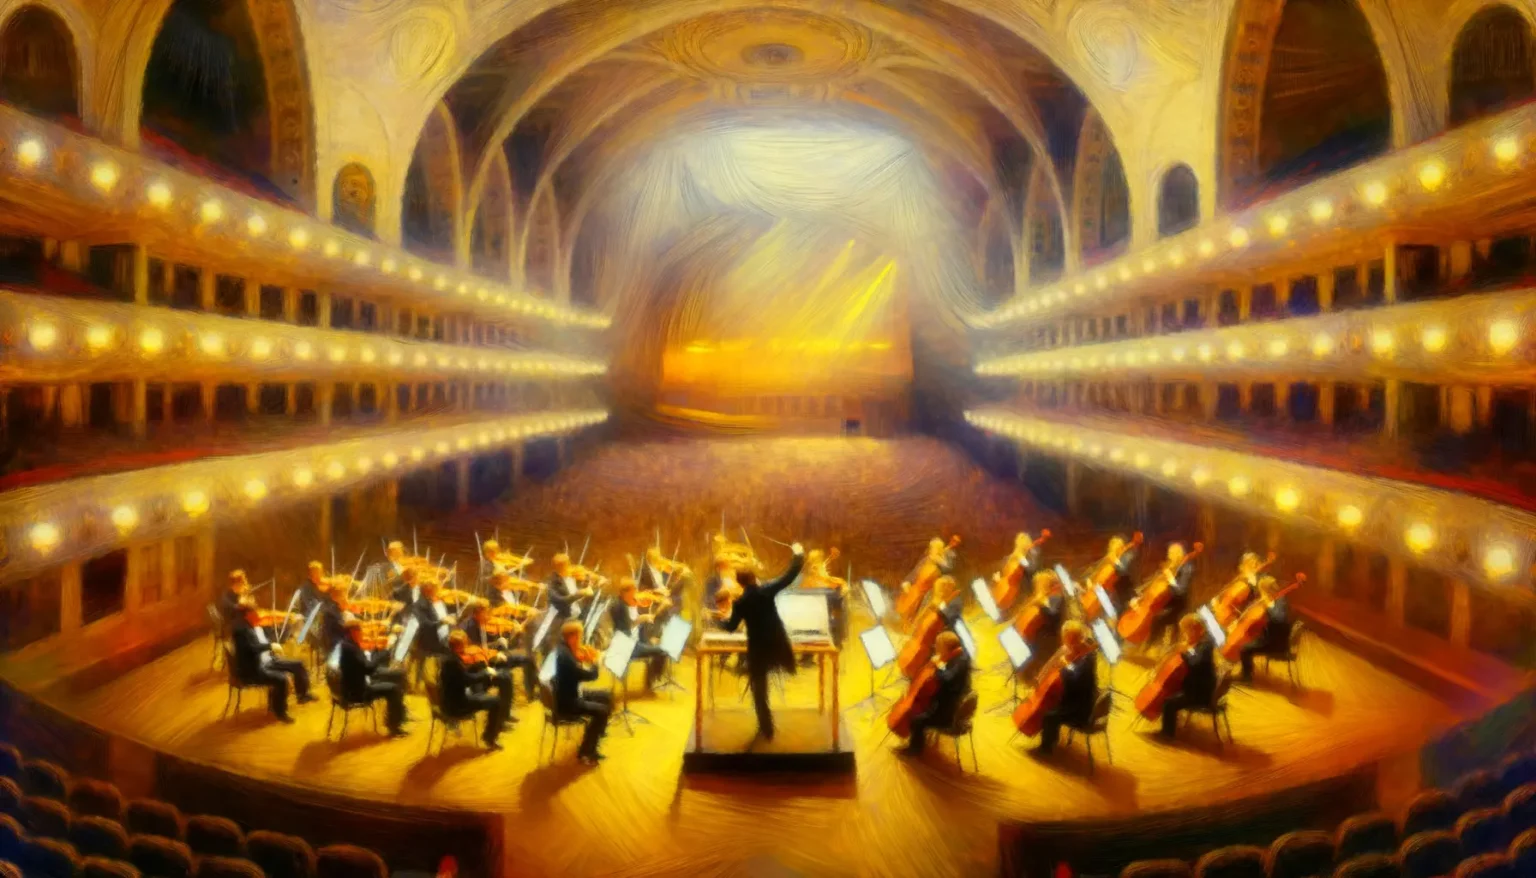 Ein Orchester während einer Aufführung in einem eleganten Konzertsaal mit mehreren Ebenen von Logen. Ein Dirigent steht in der Mitte vor den Musikern, die Streichinstrumente spielen. Die Szene ist beleuchtet durch warmes Licht, das den Saal in eine anmutige, träumerische Atmosphäre taucht. Der Stil des Bildes ist weich und erinnert an ein Ölgemälde mit verwischten Konturen und strahlenden Farben.